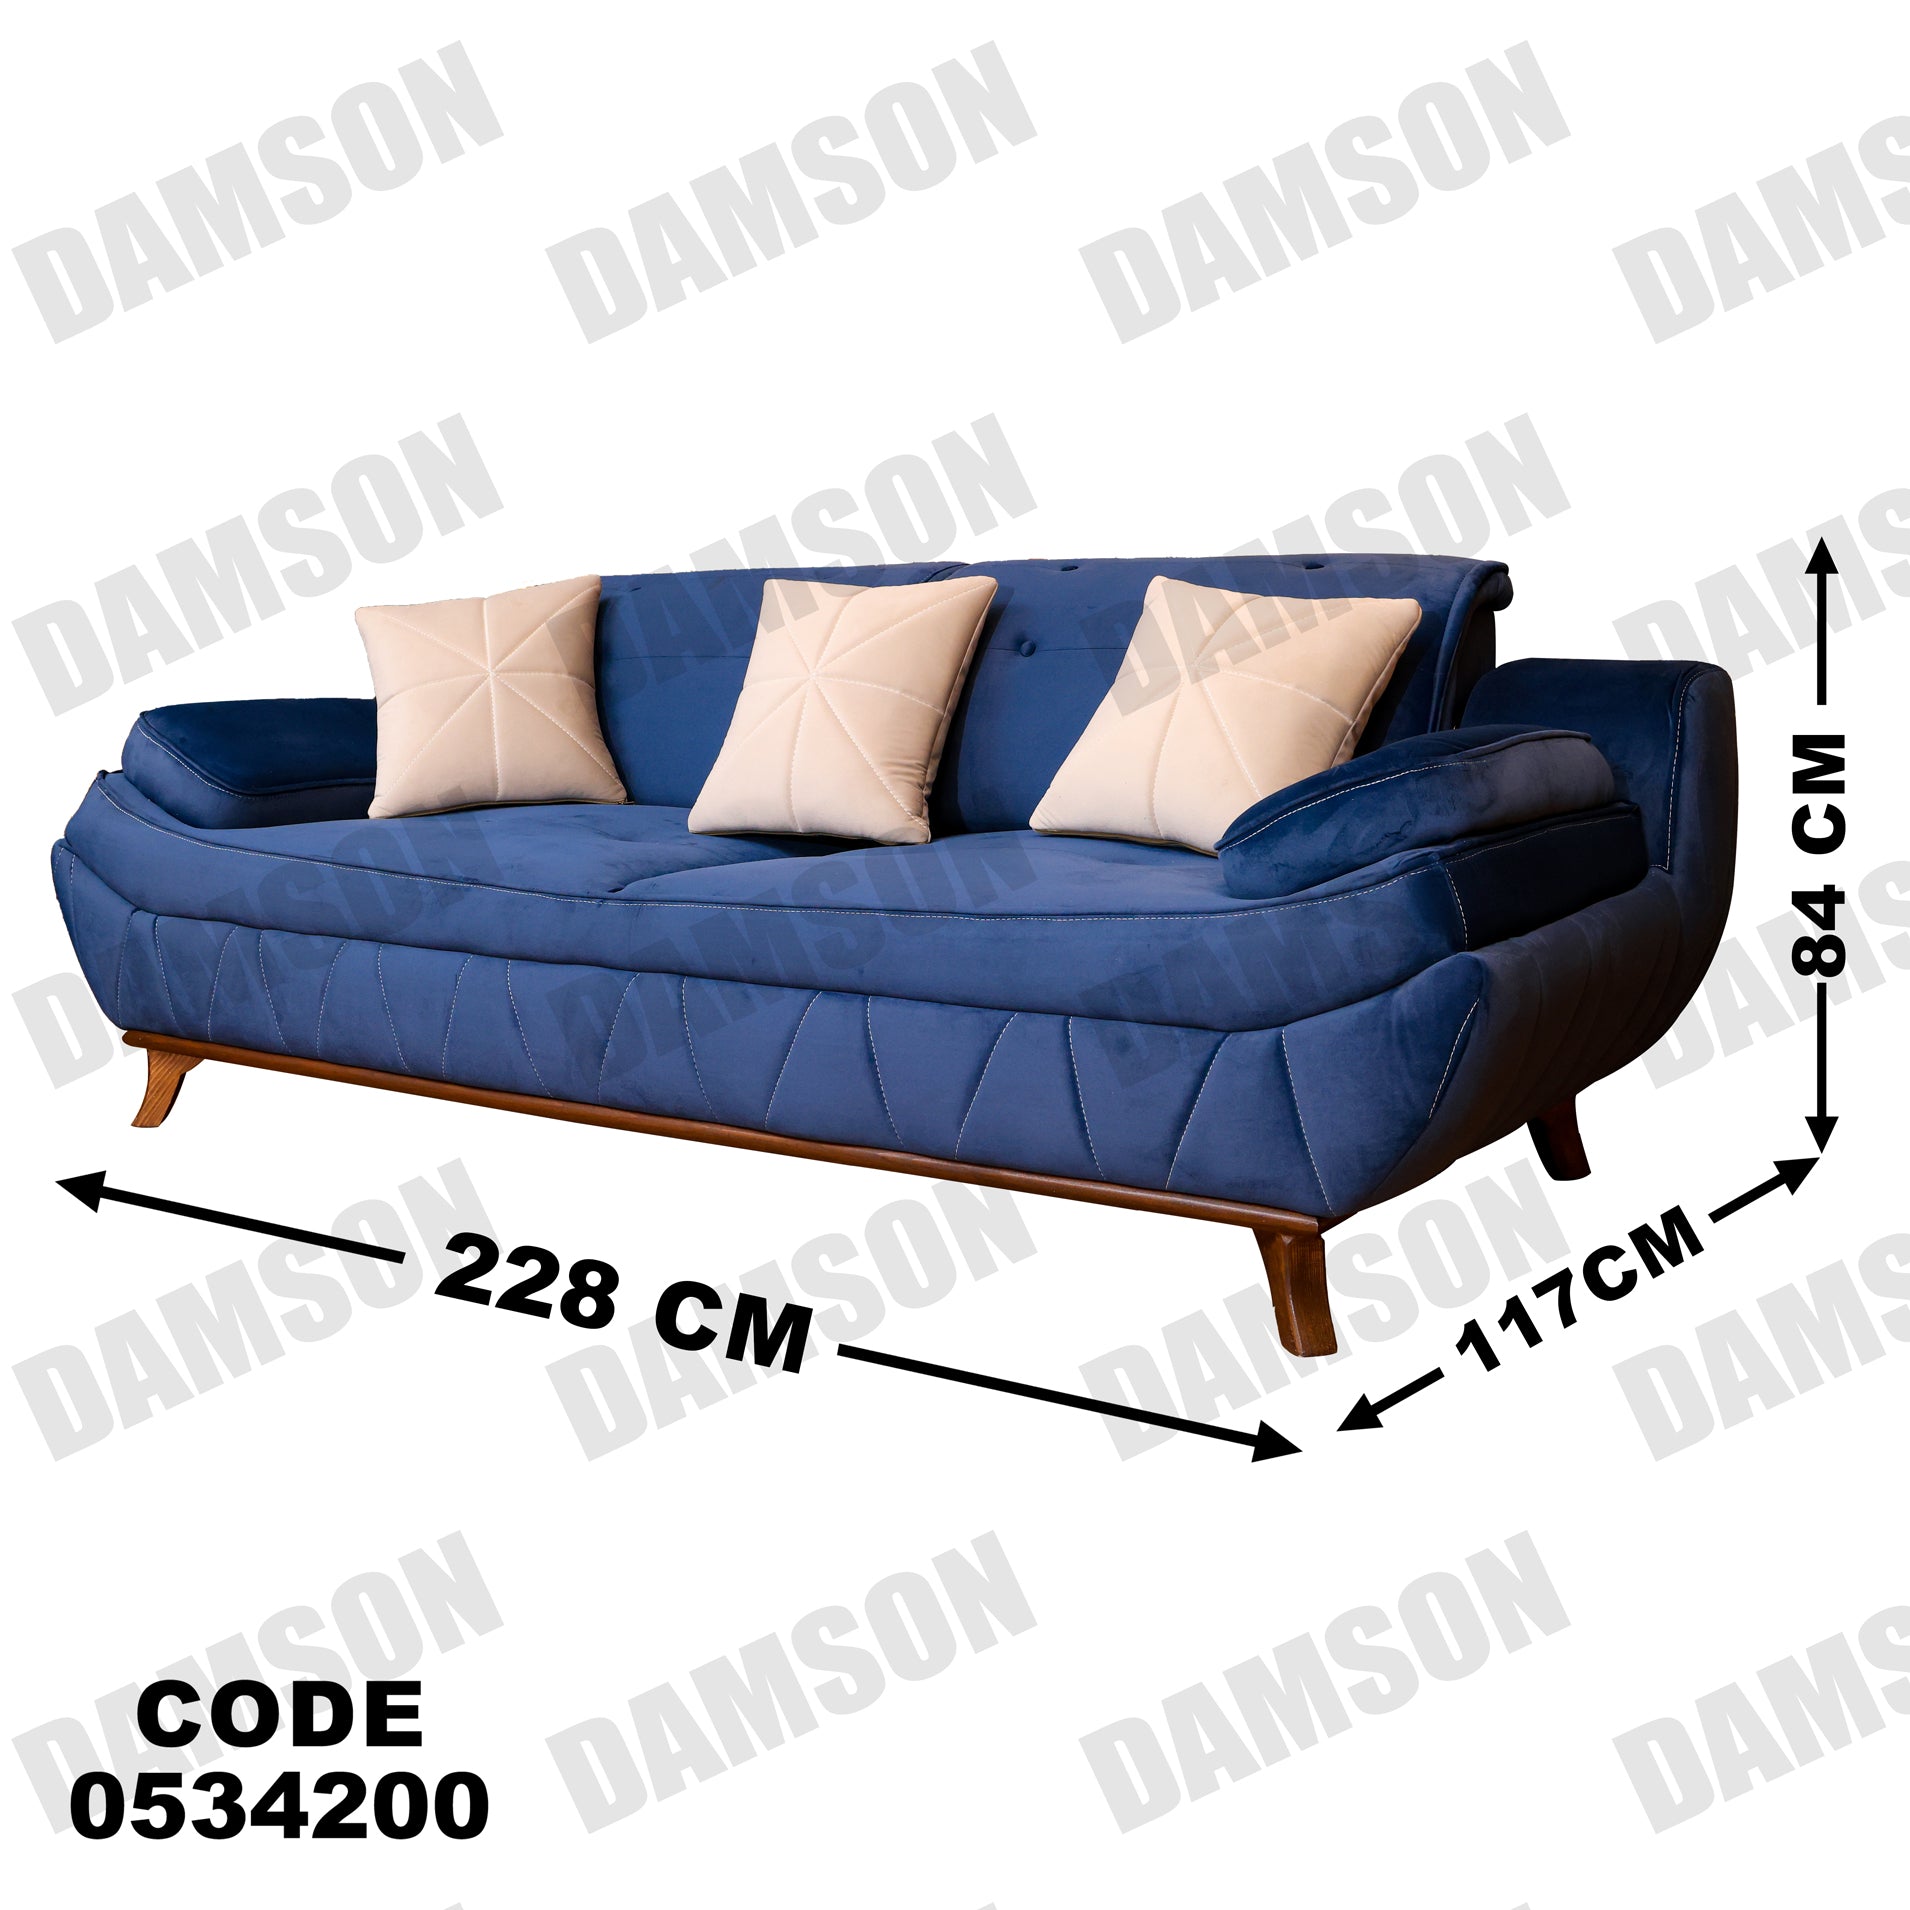 انترية 342 - Damson Furnitureانترية 342